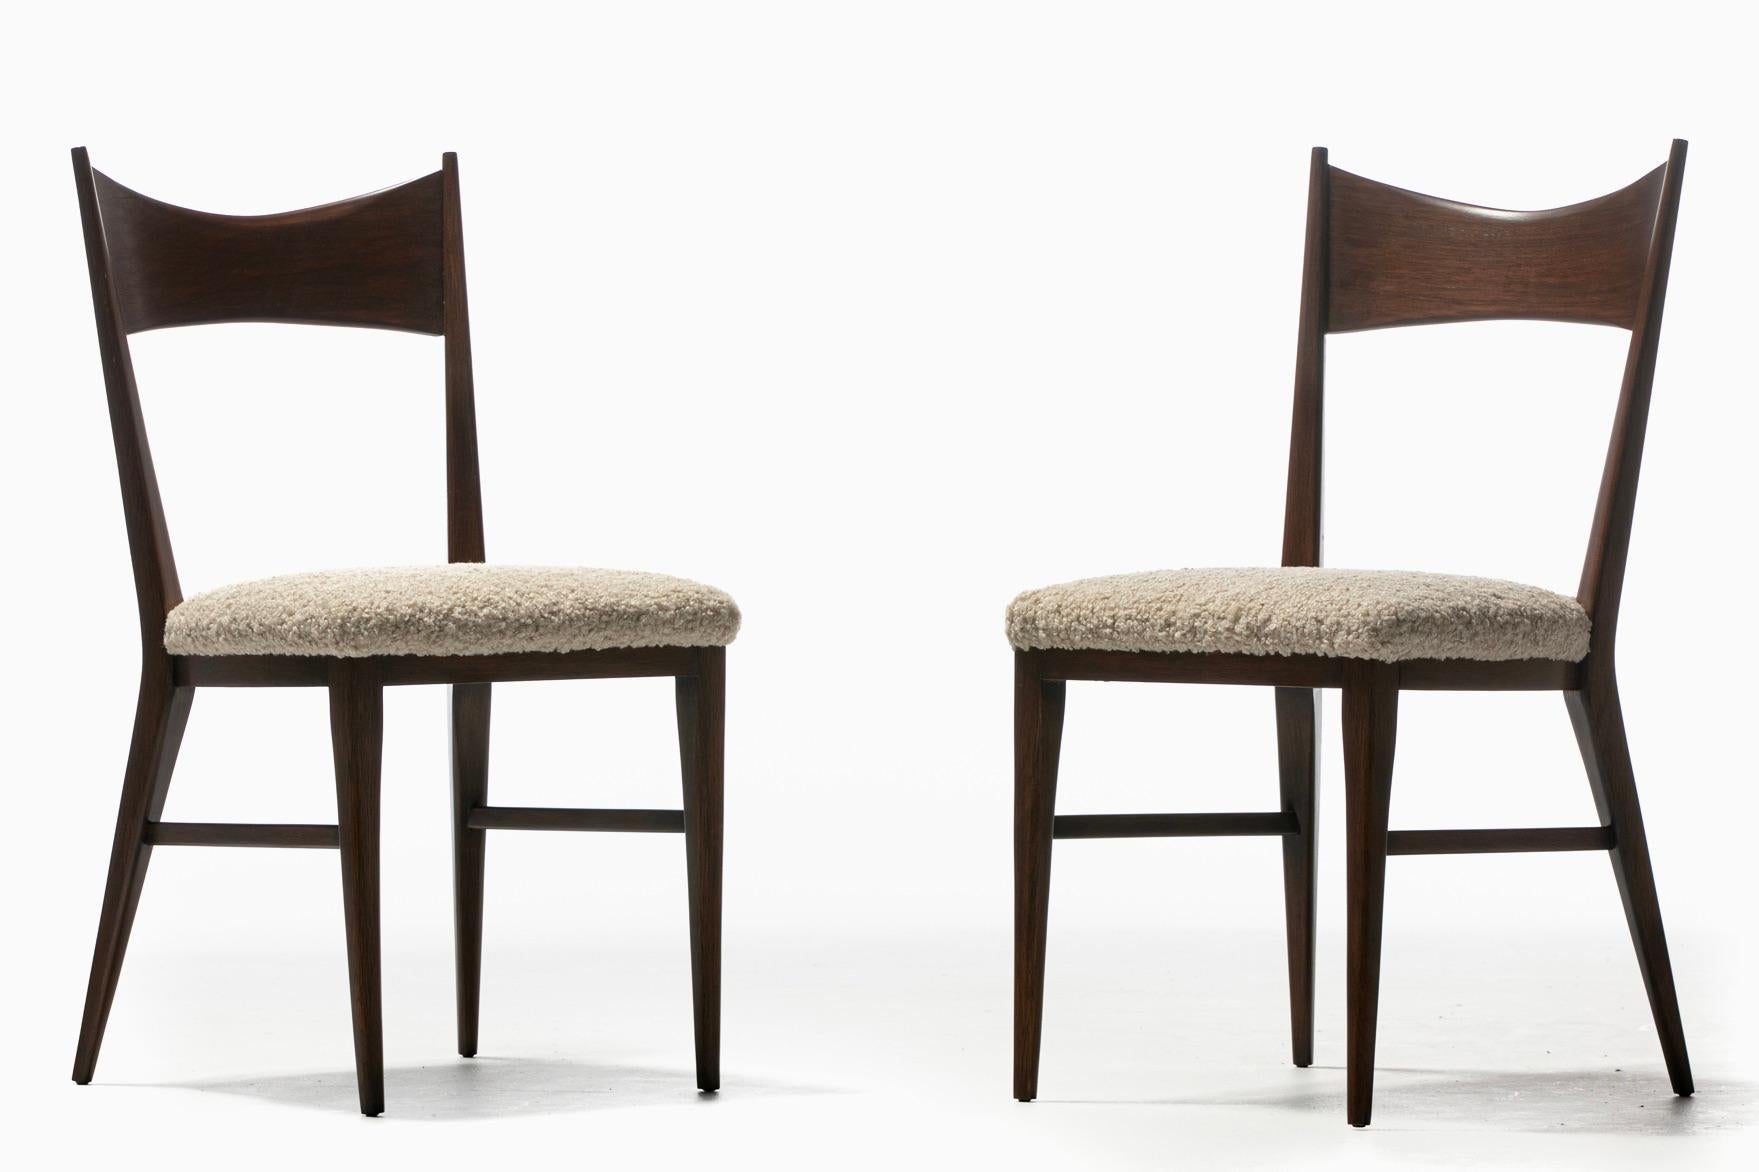 Une paire de chaises d'appoint en noyer de Paul McCobb entièrement restaurées avec un nouveau revêtement de siège en bouclé blanc ivoire légèrement texturé. Paul McCobb est connu pour son talent à créer des meubles classiques et sexy de style